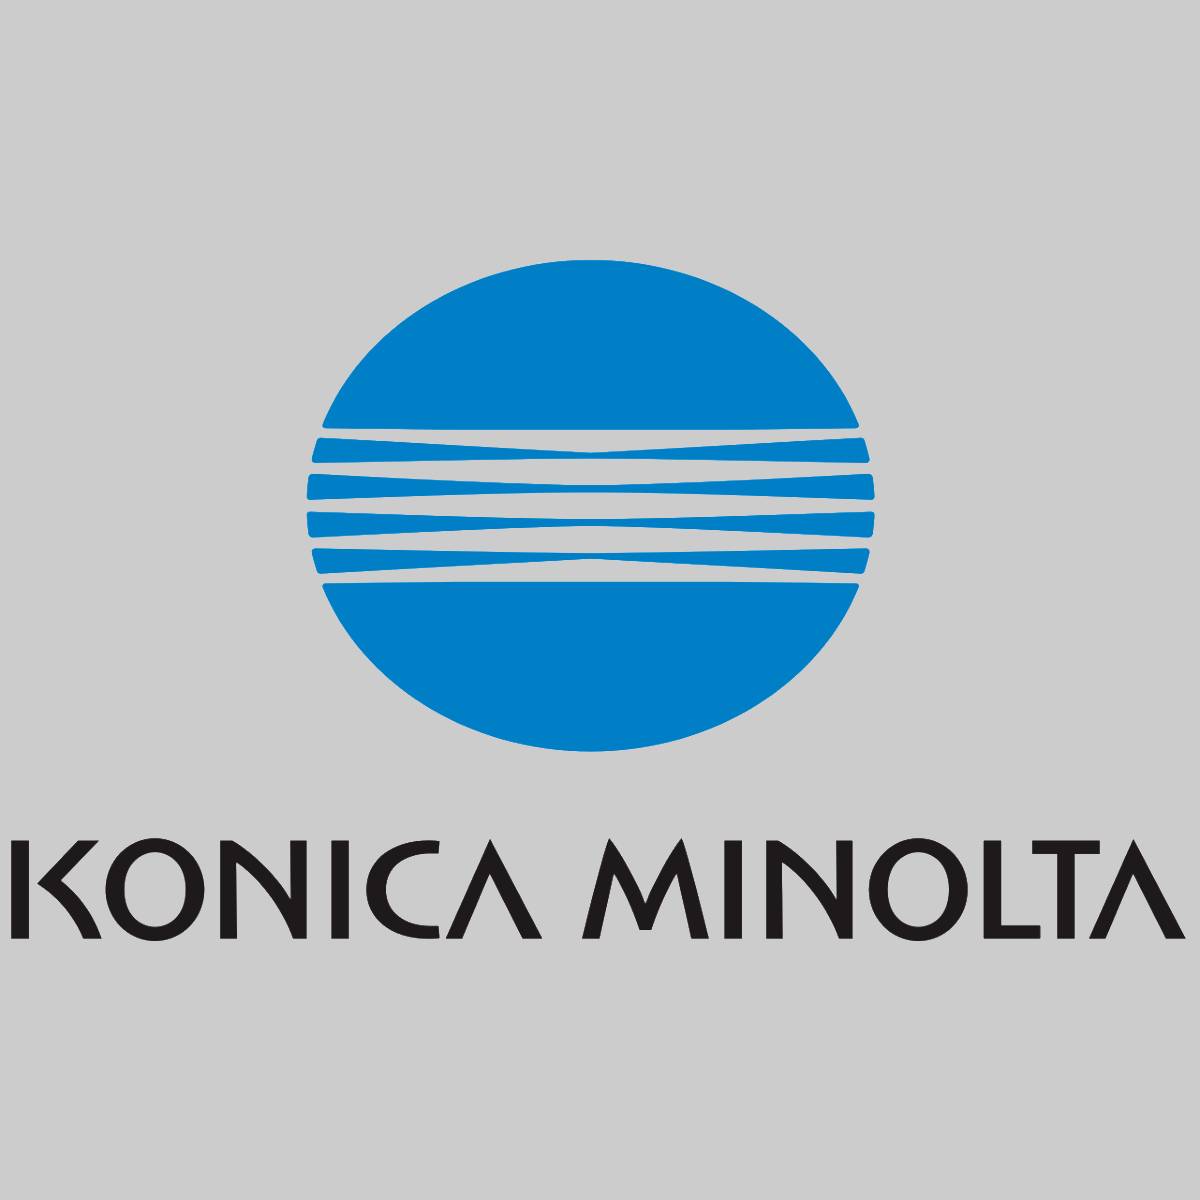 "Original Konica Minolta DV011 Développeur Noir A0TH500 pour Bizhub Pro 1200 105